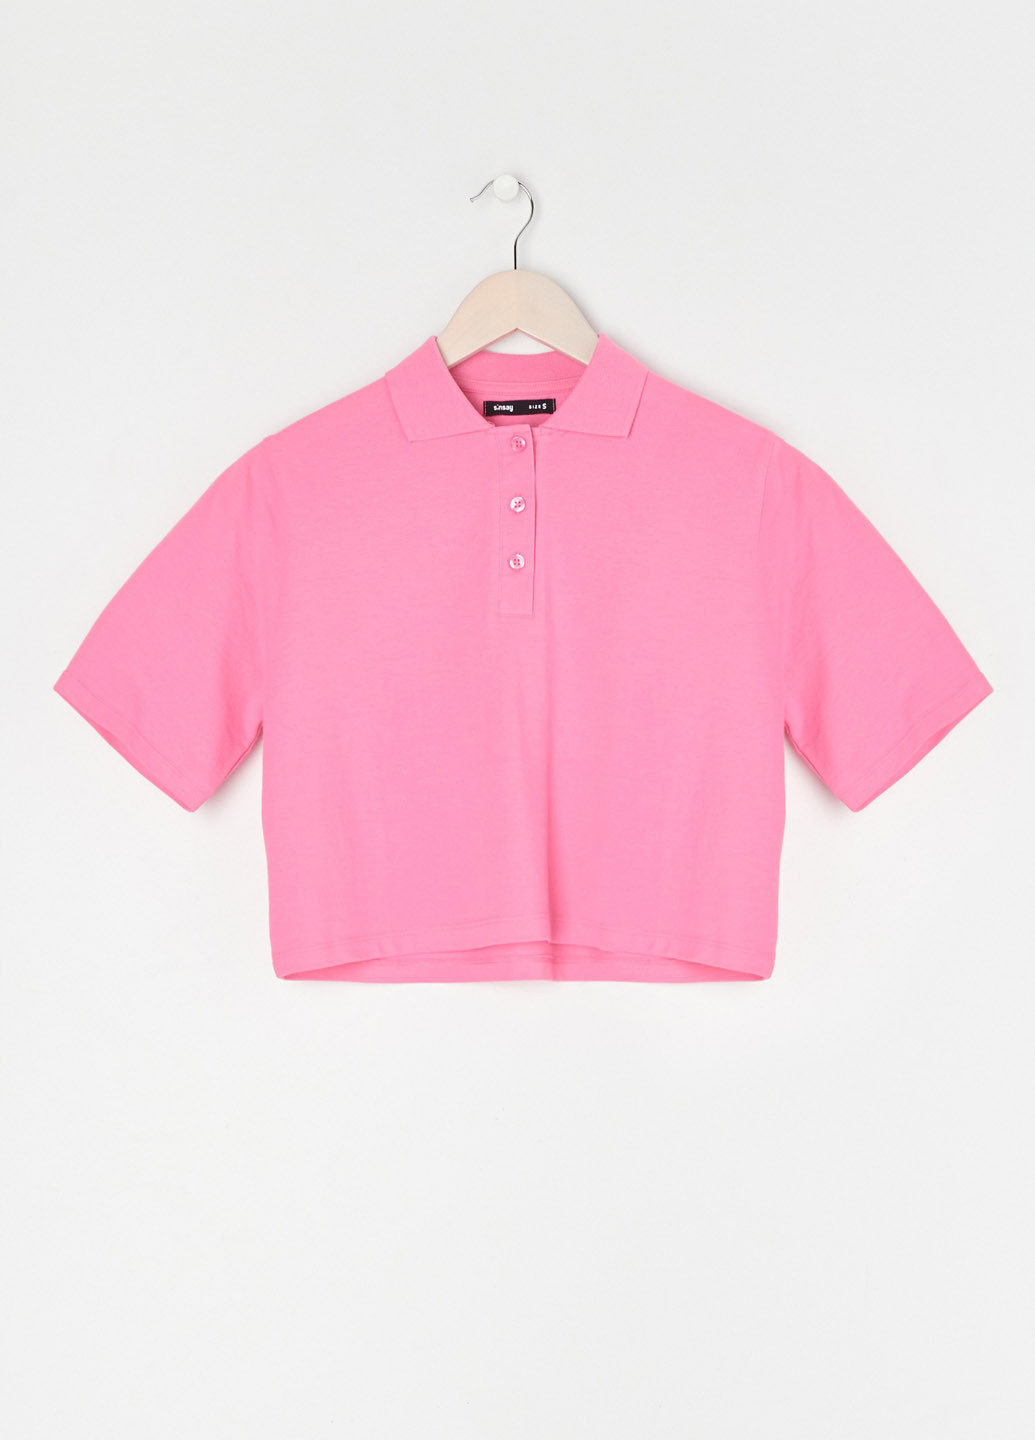 Розовая женская футболка-поло Sinsay однотонная